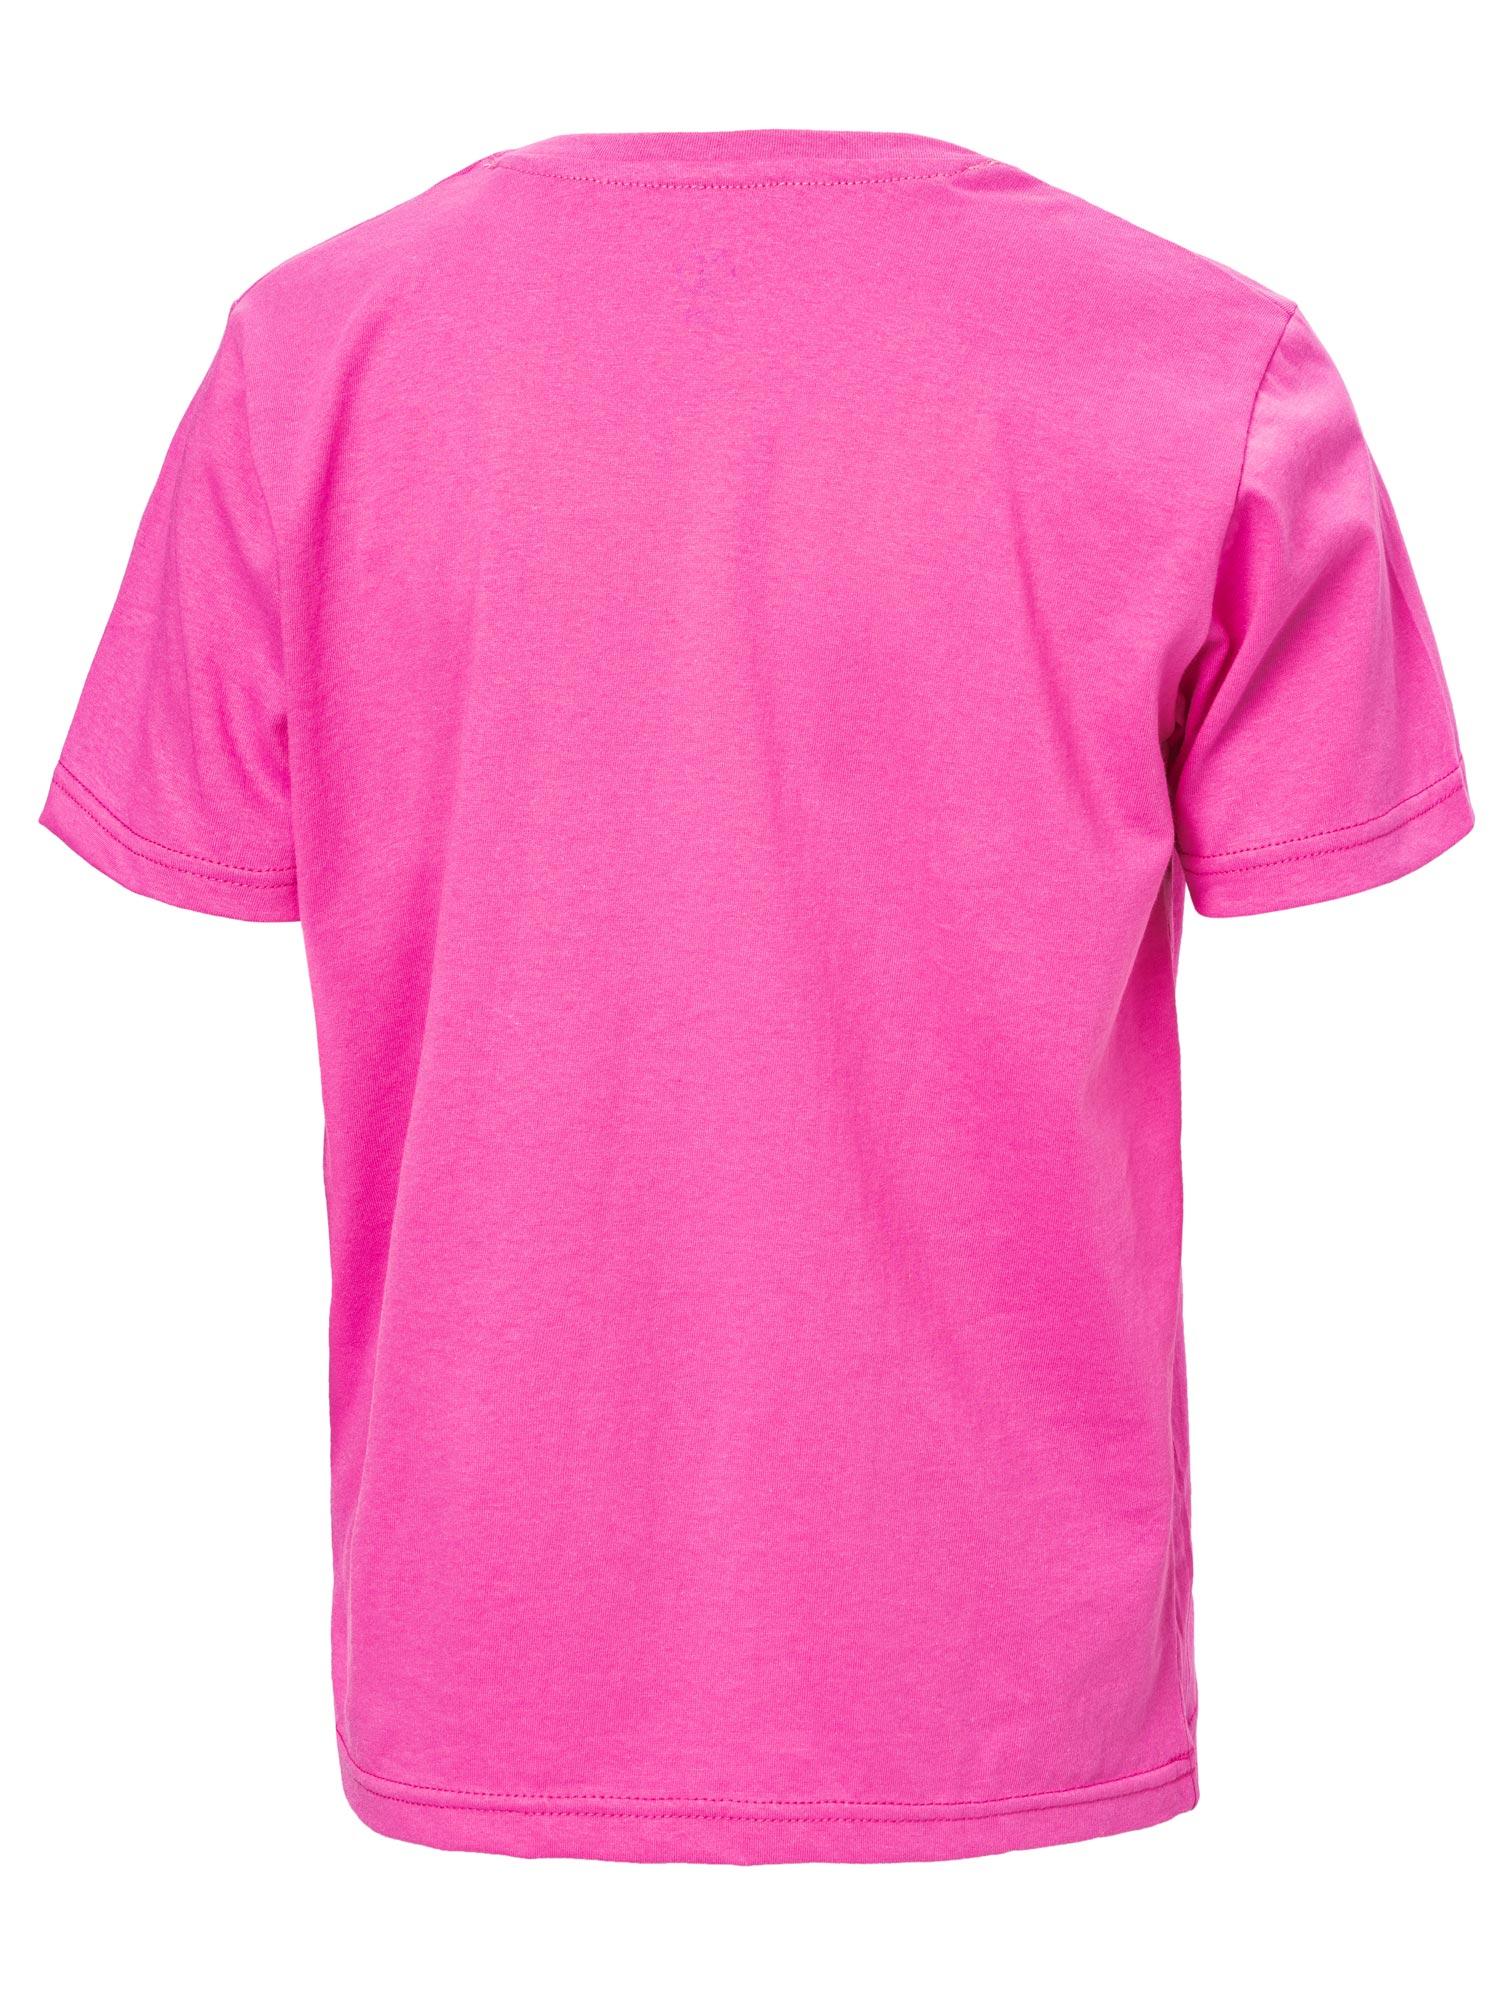 Selected image for BRILLE Majica za devojčice Lamma roze